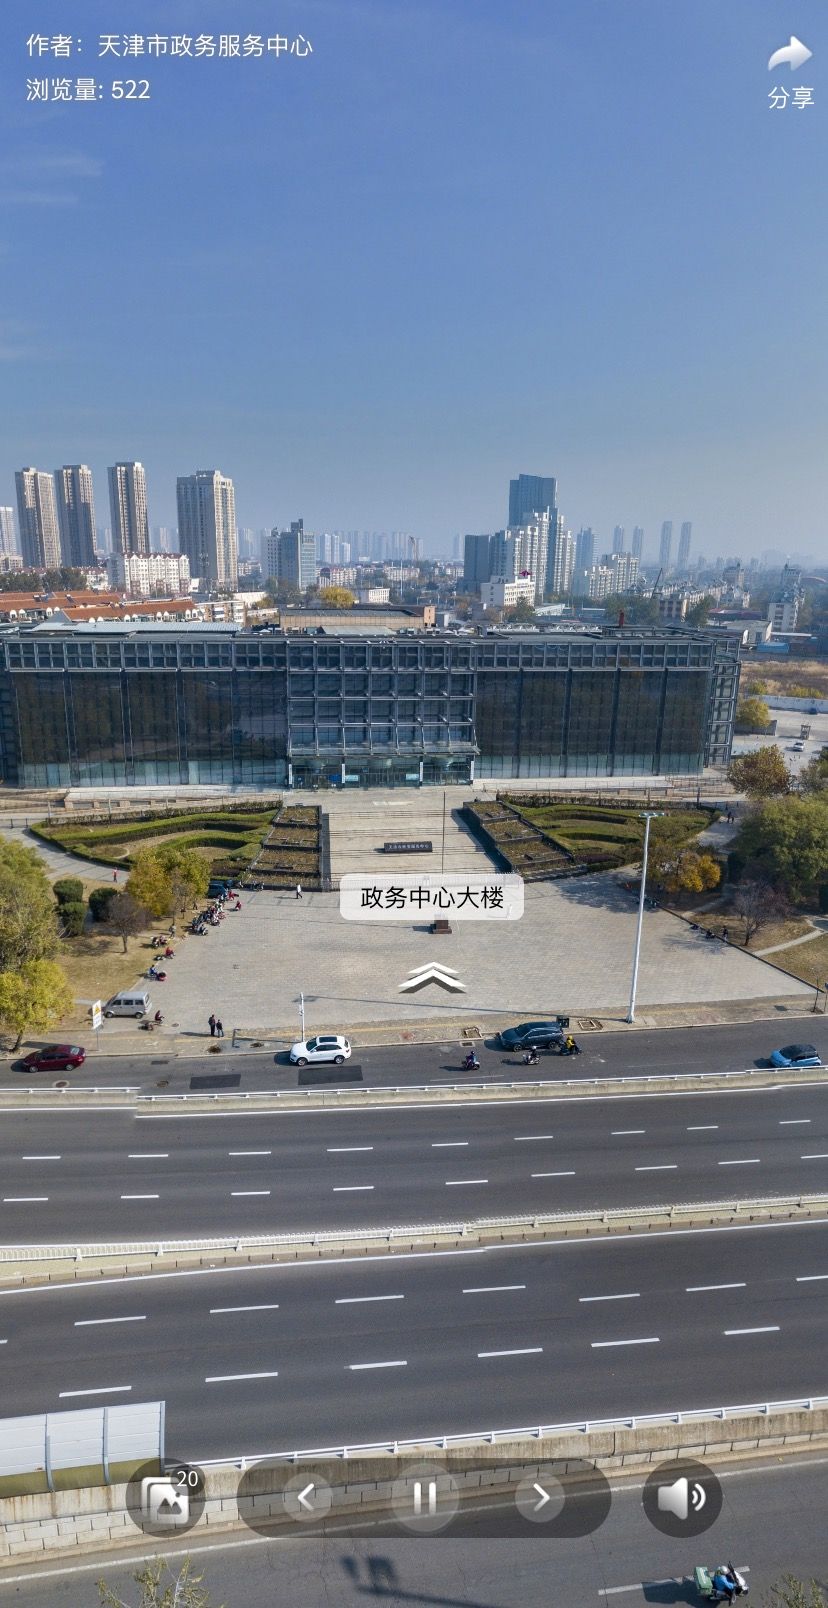 天津市政务服务中心大厅VR全景导航功能上线！欢迎您随时随地“来”~